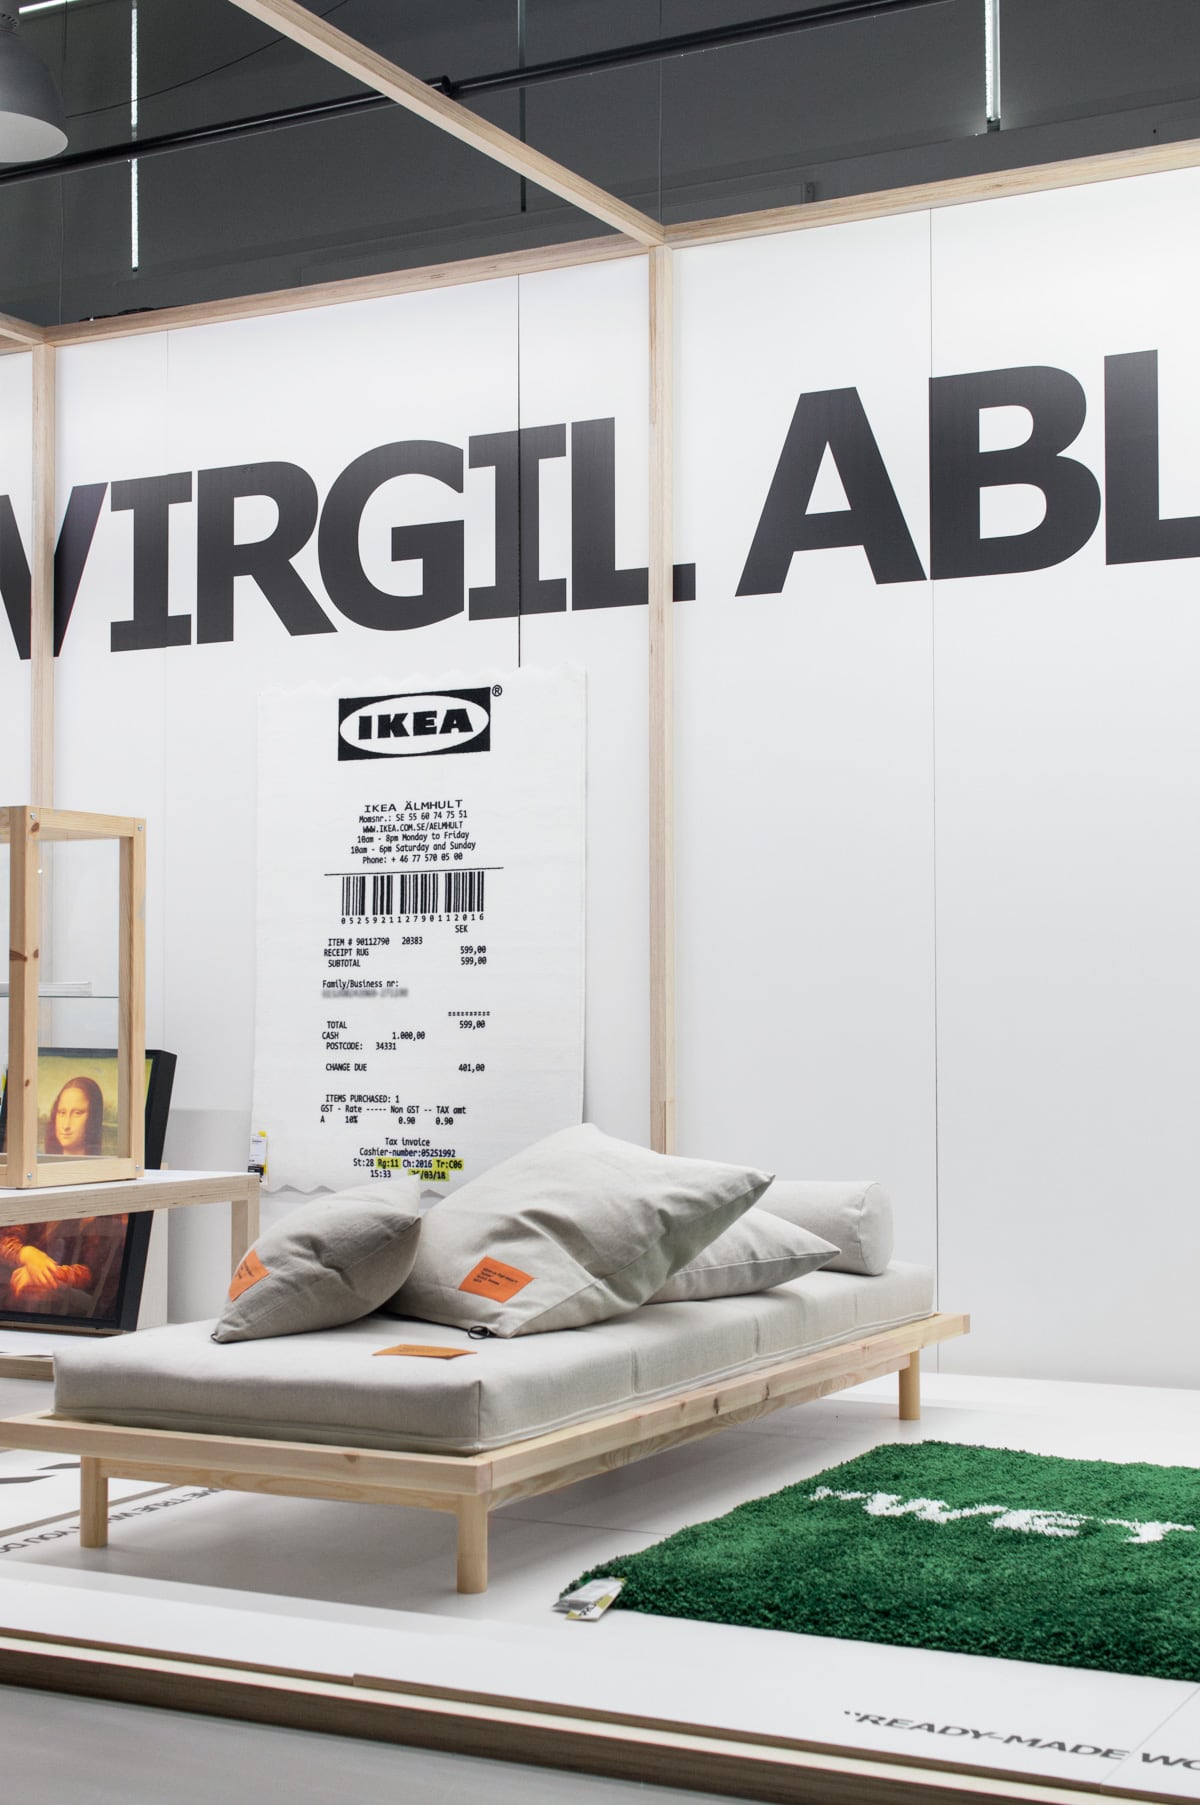 IKEA virgil - Tanja van Hoogdalem